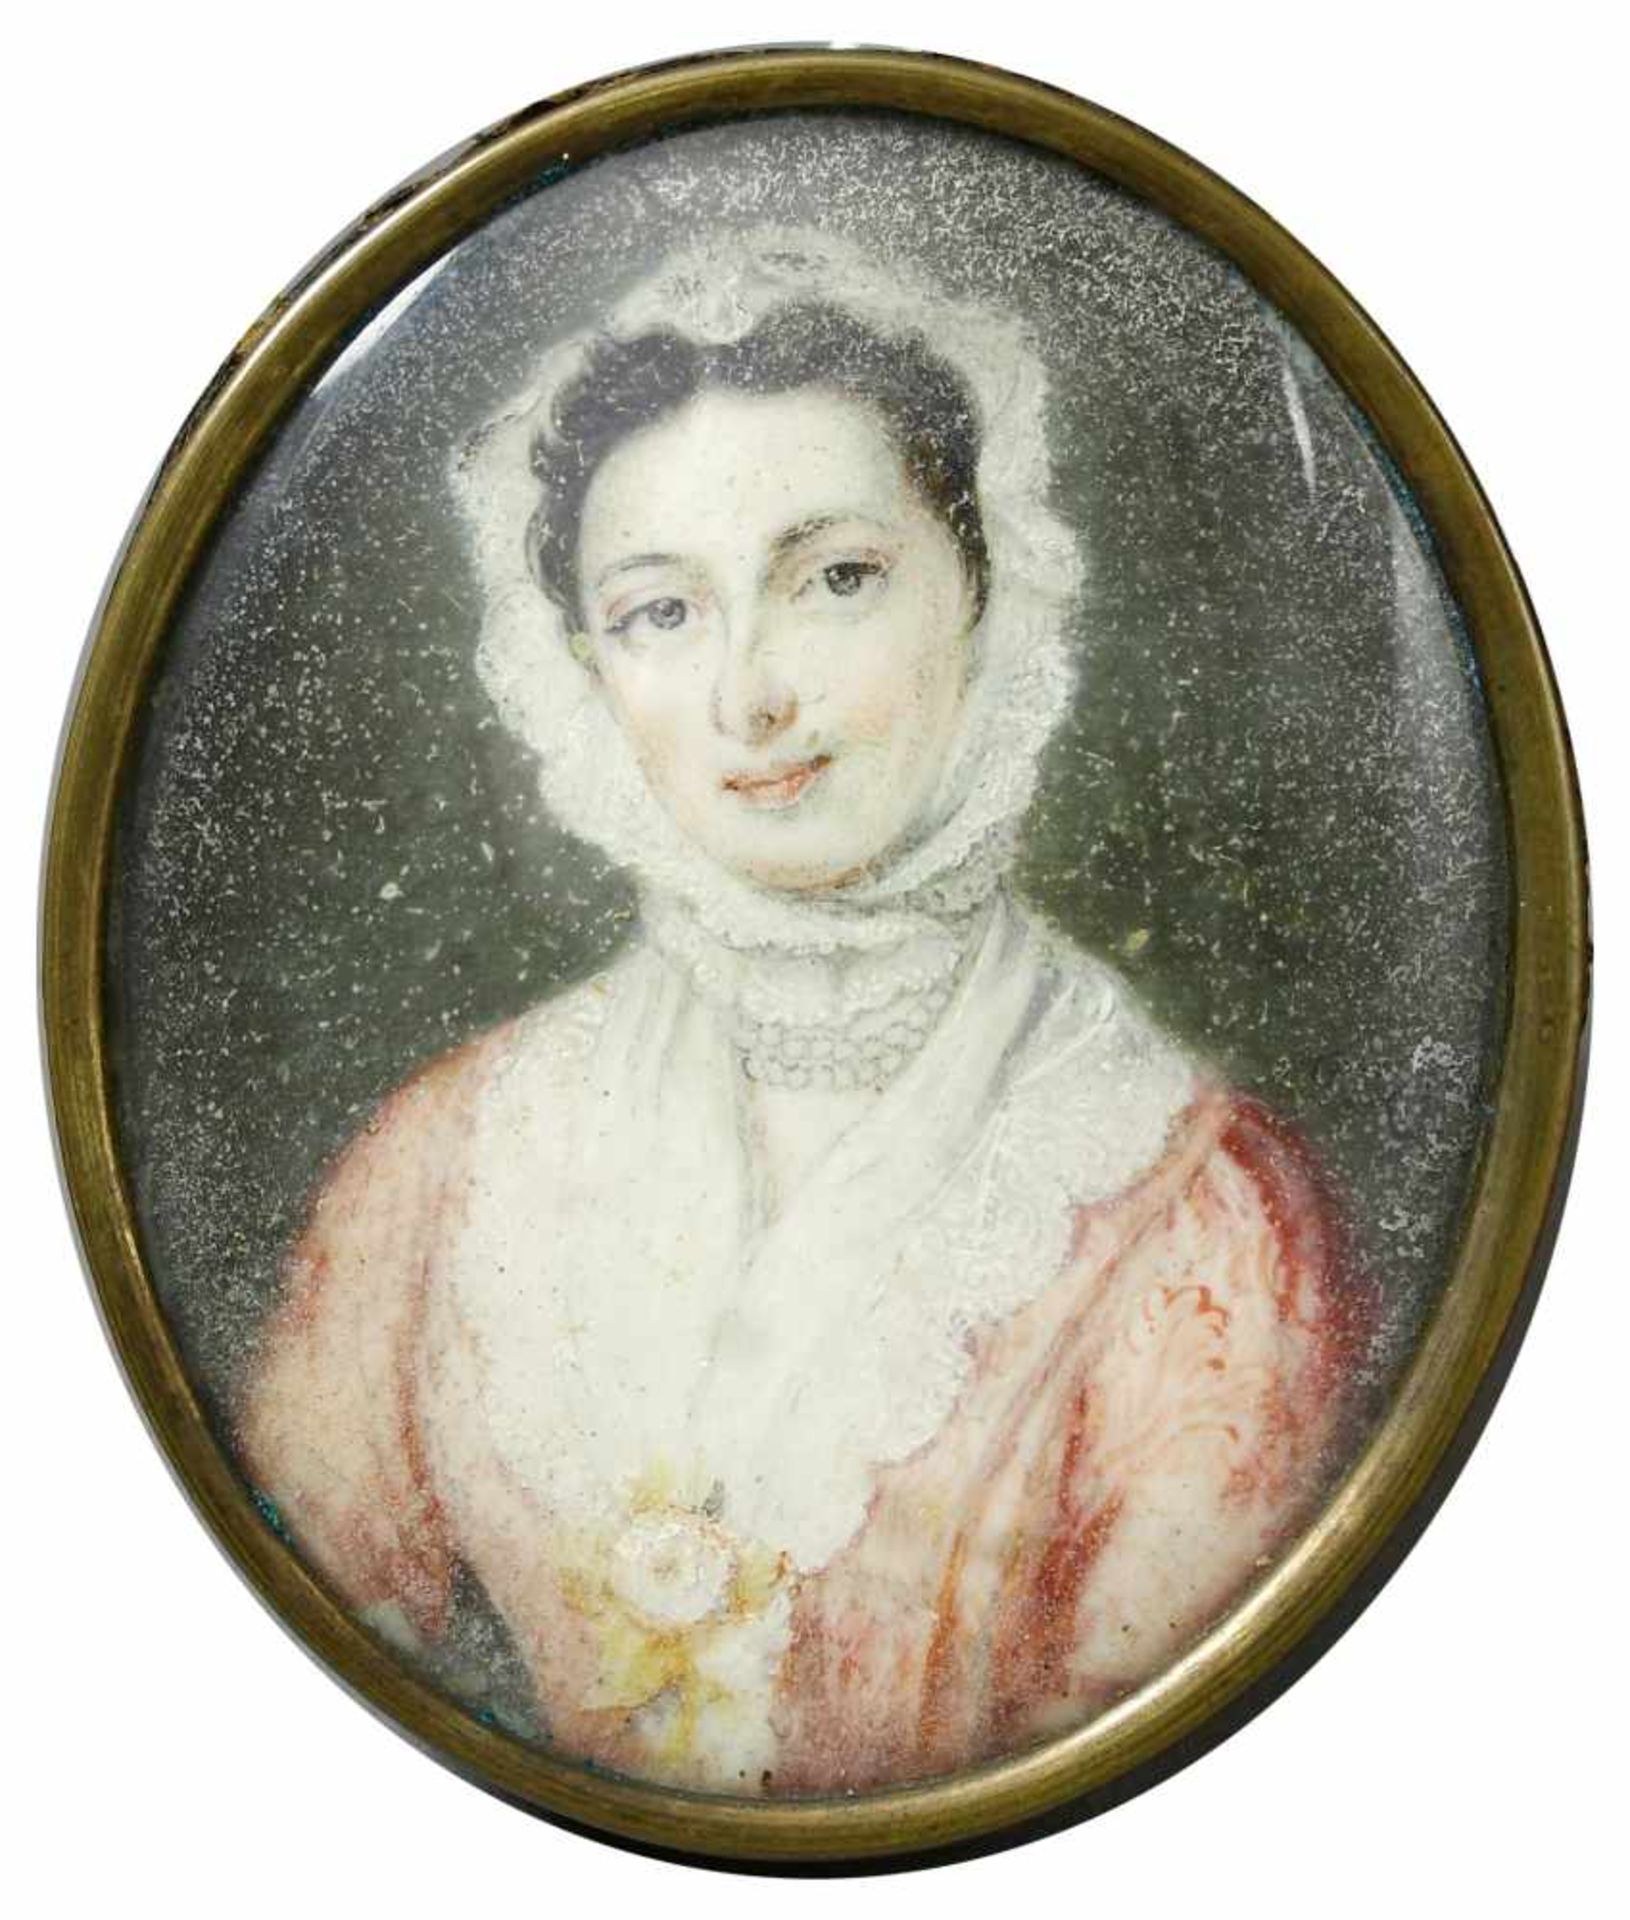 Miniatur, Biedermeier, um 1820Brustbild einer jungen Frau mit leicht zur Seite geneigtem Kopf.